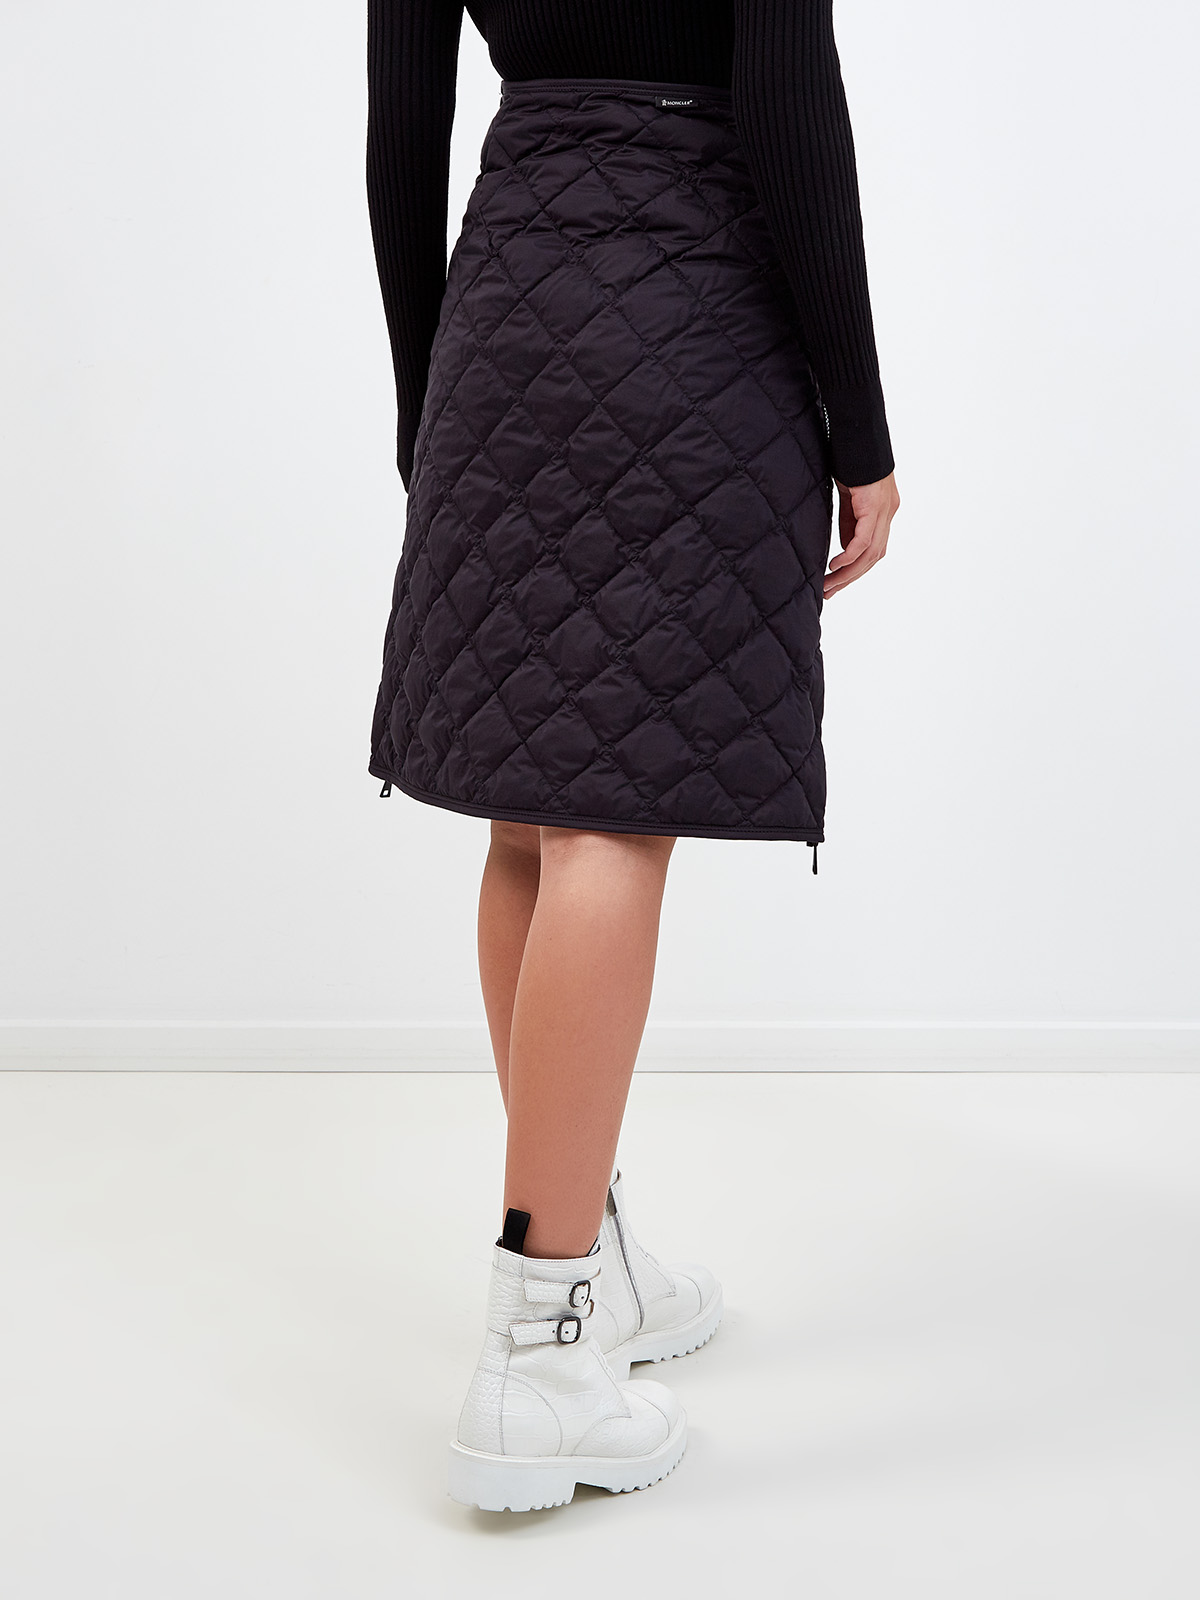 Стеганая юбка-трапеция с боковыми застежками на молниях MONCLER, цвет черный, размер M;L;XL - фото 4